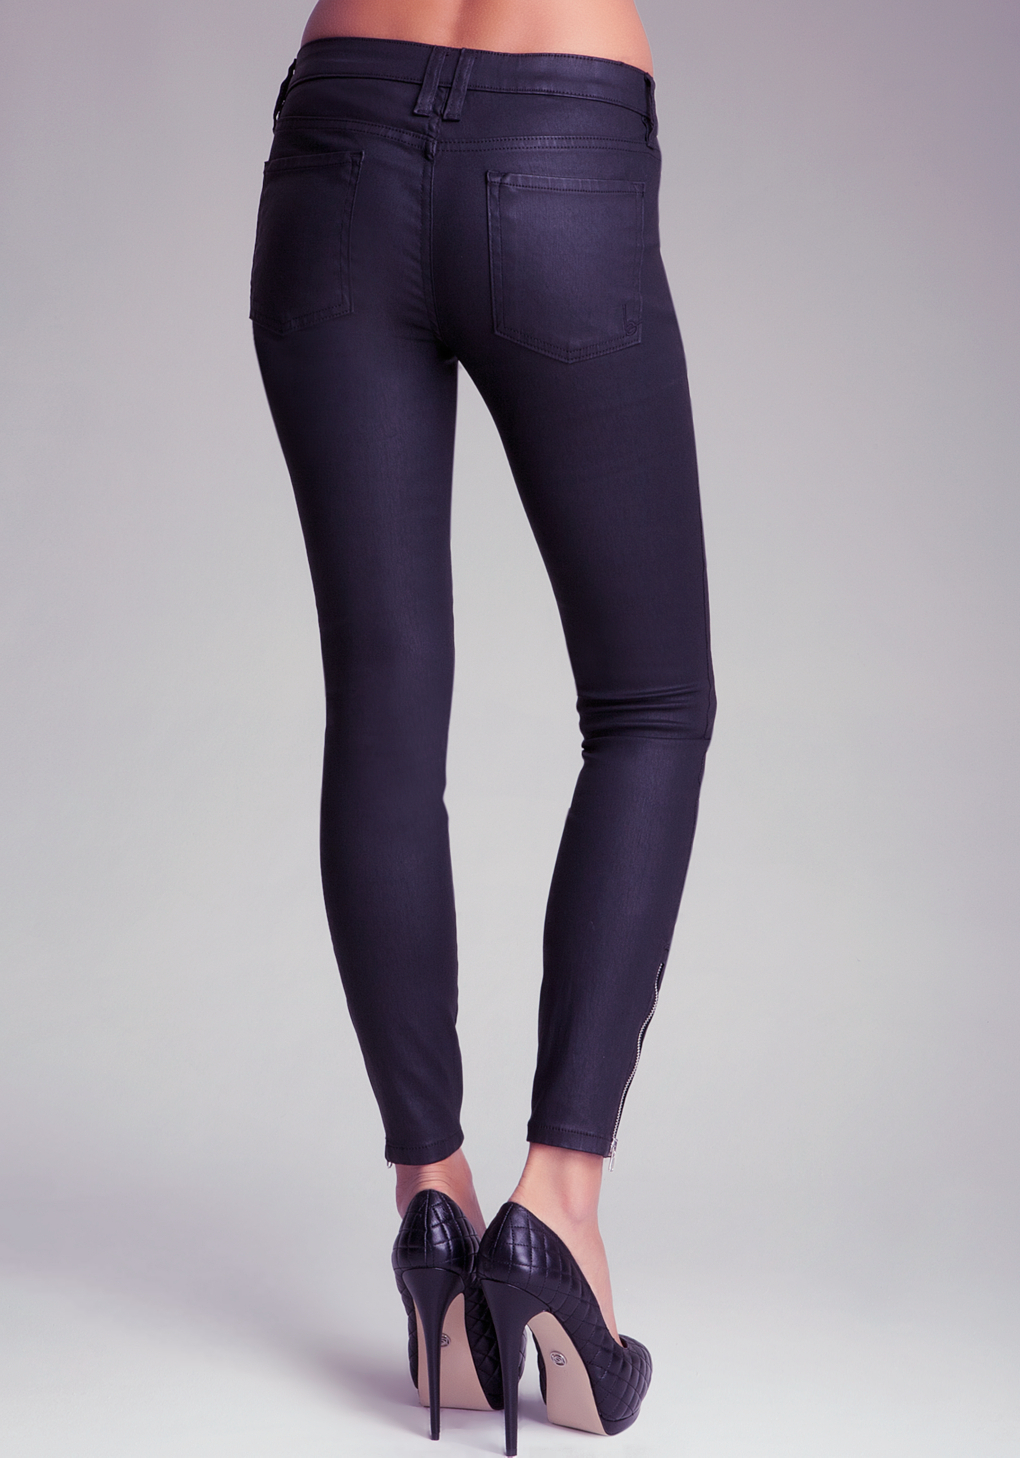 Lyst - Bebe Coated Zipper Skinny Jeans in Purple